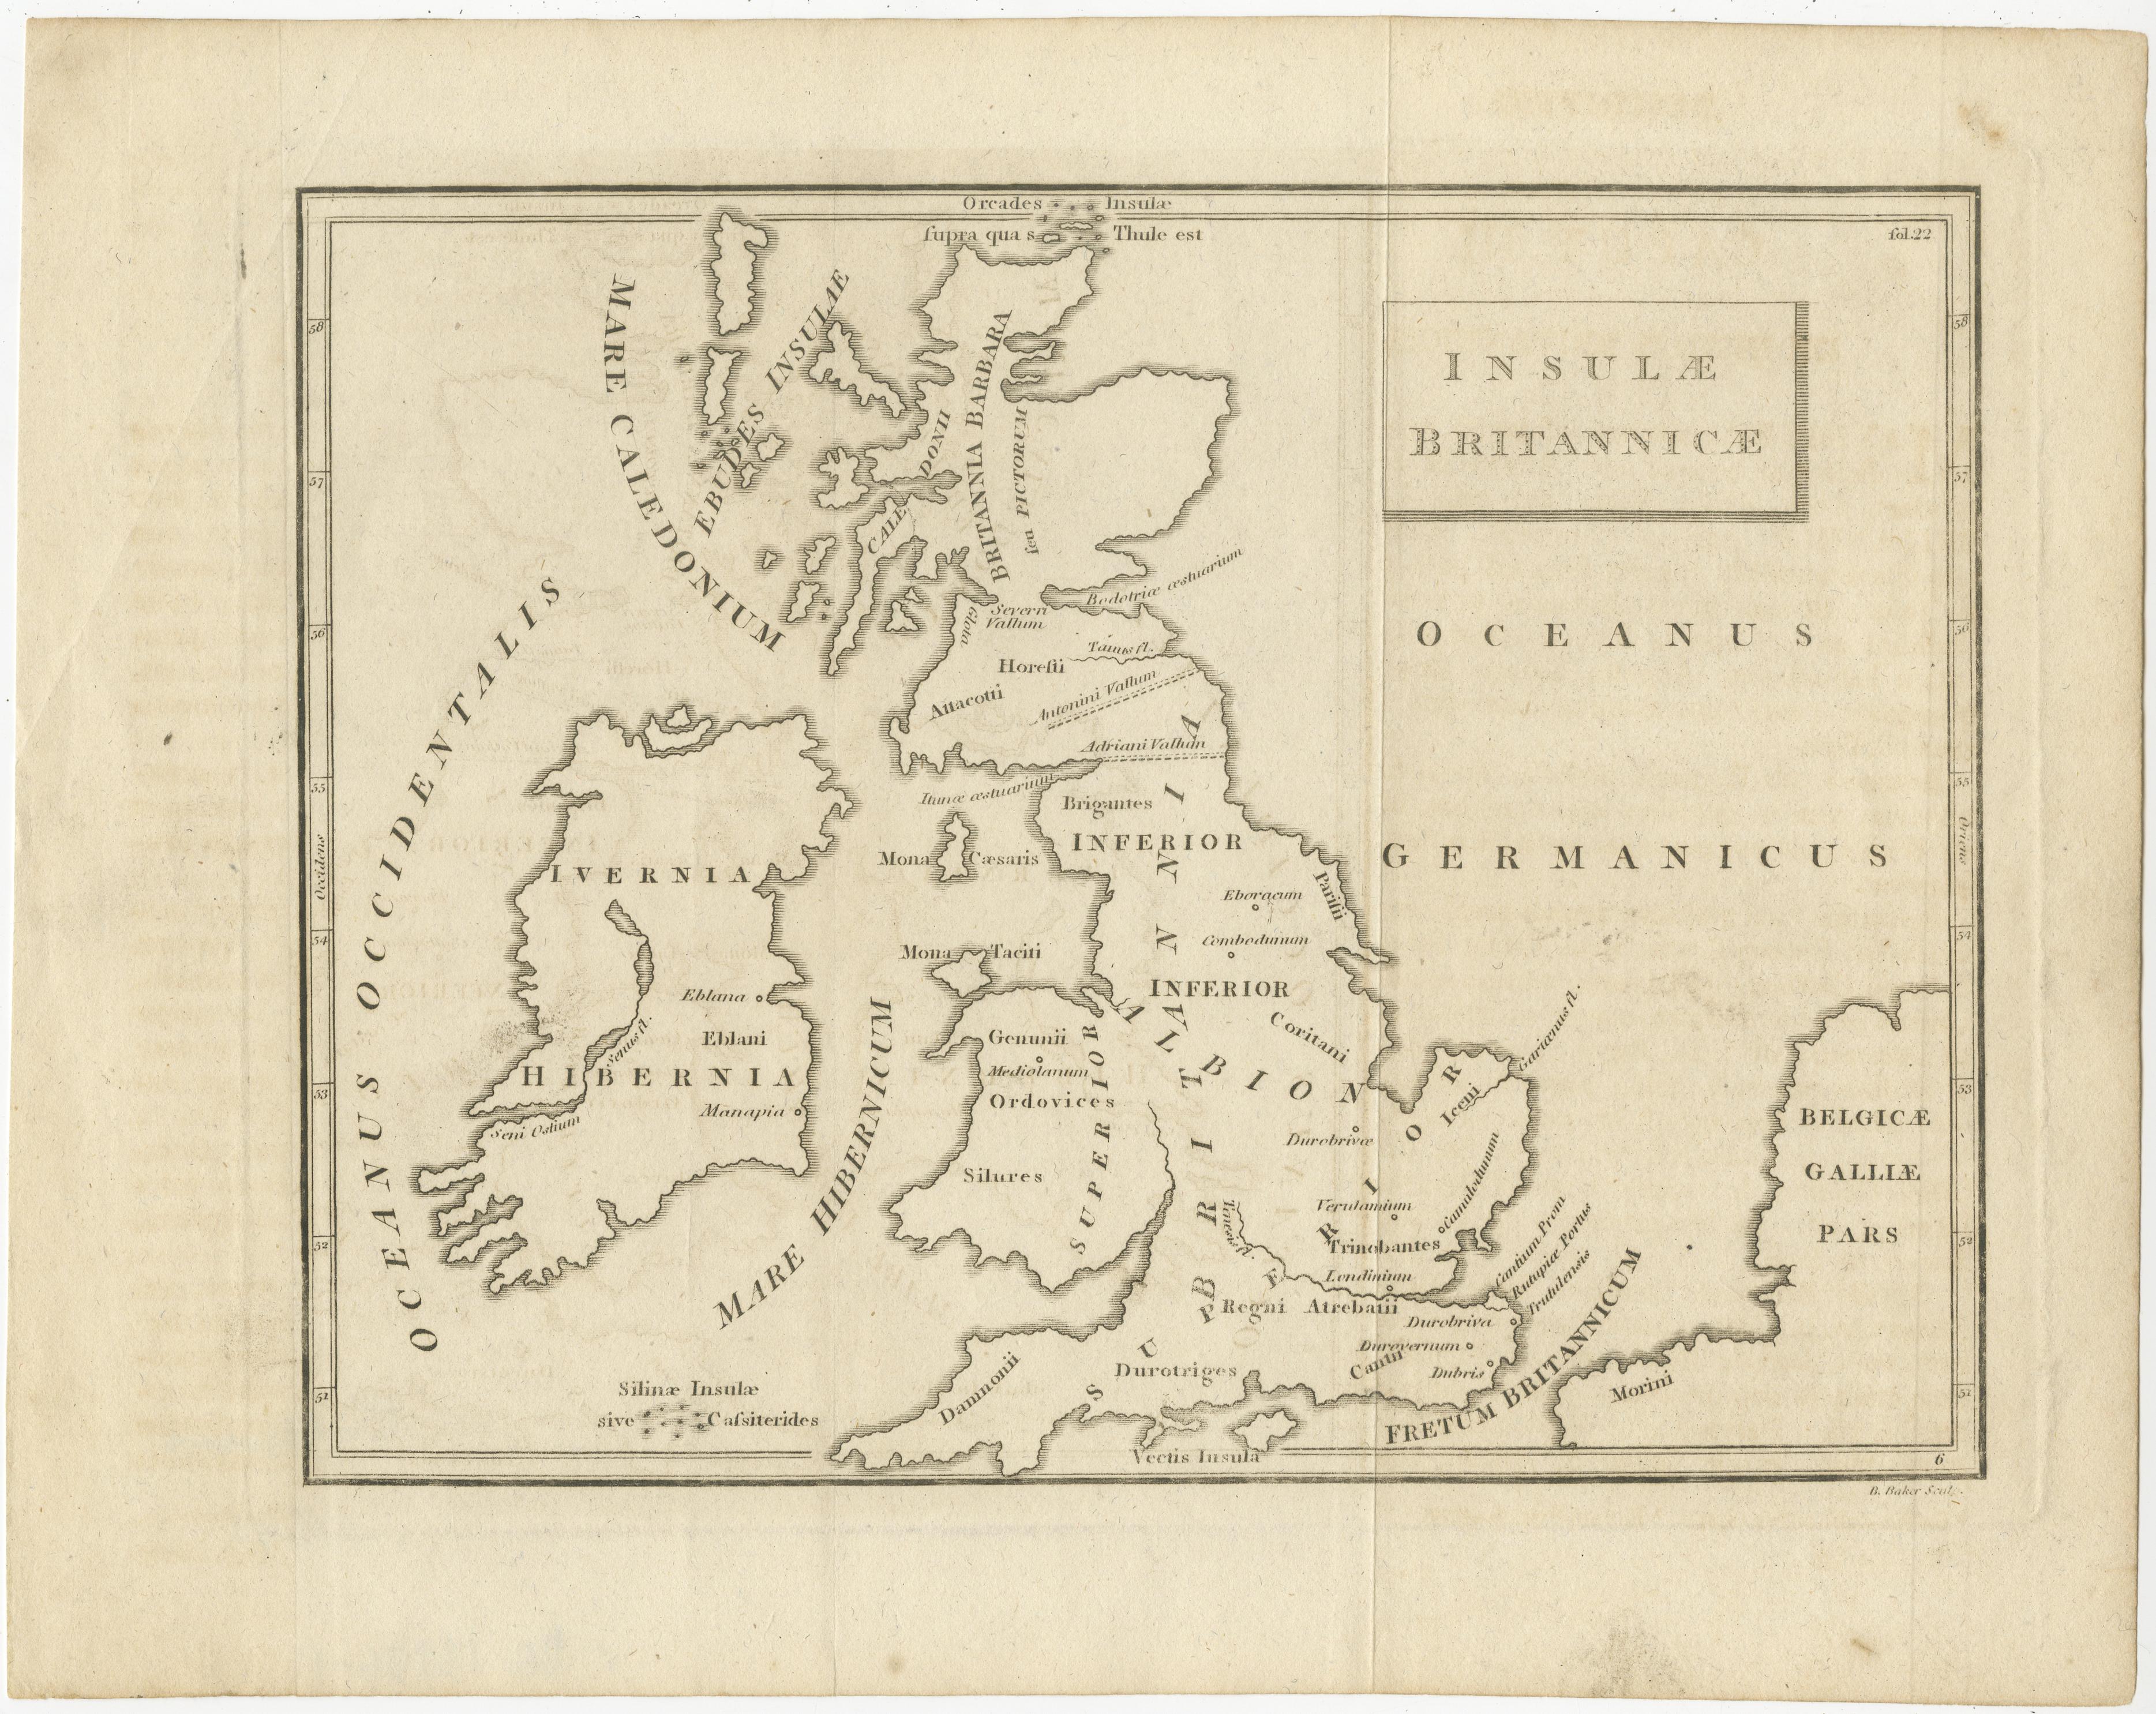 Antike Karte mit dem Titel 'Insulae Britannicae'. Interessante Karte von Großbritannien, Schottland und Irland.  Sie zeigt einen rudimentären Umriss der Inseln entsprechend der Geografie des Römischen Reiches, nachdem Caesars Legionen die